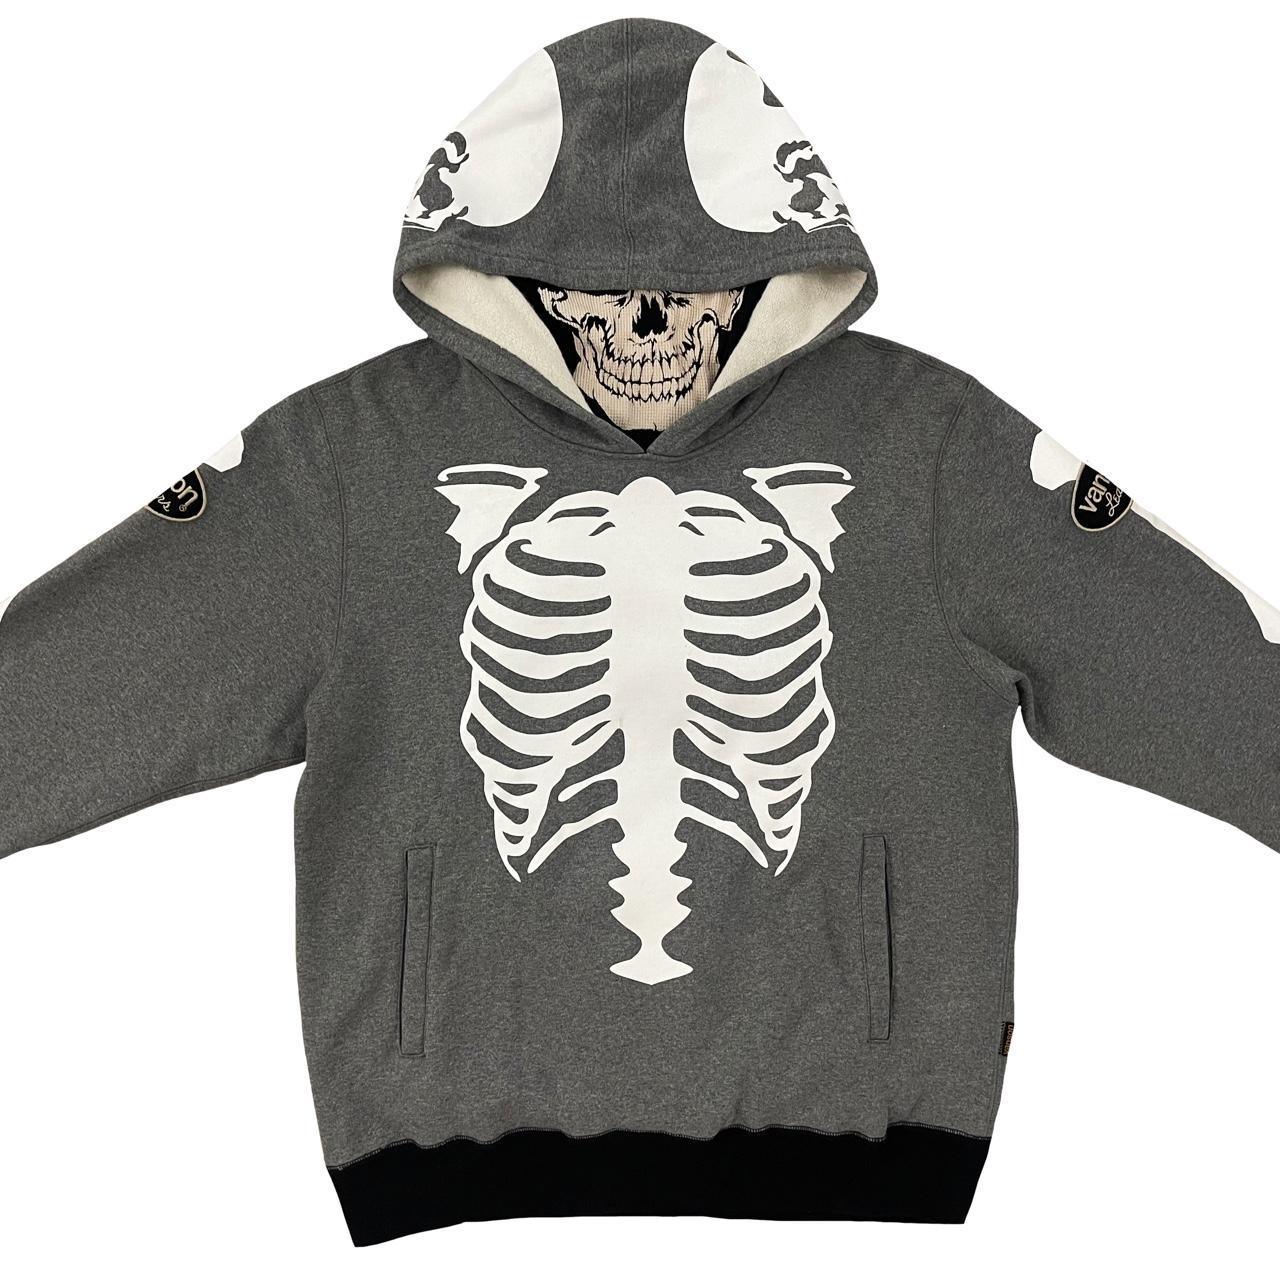 Vanson Leathers Skeleton Hoodie - Known Source